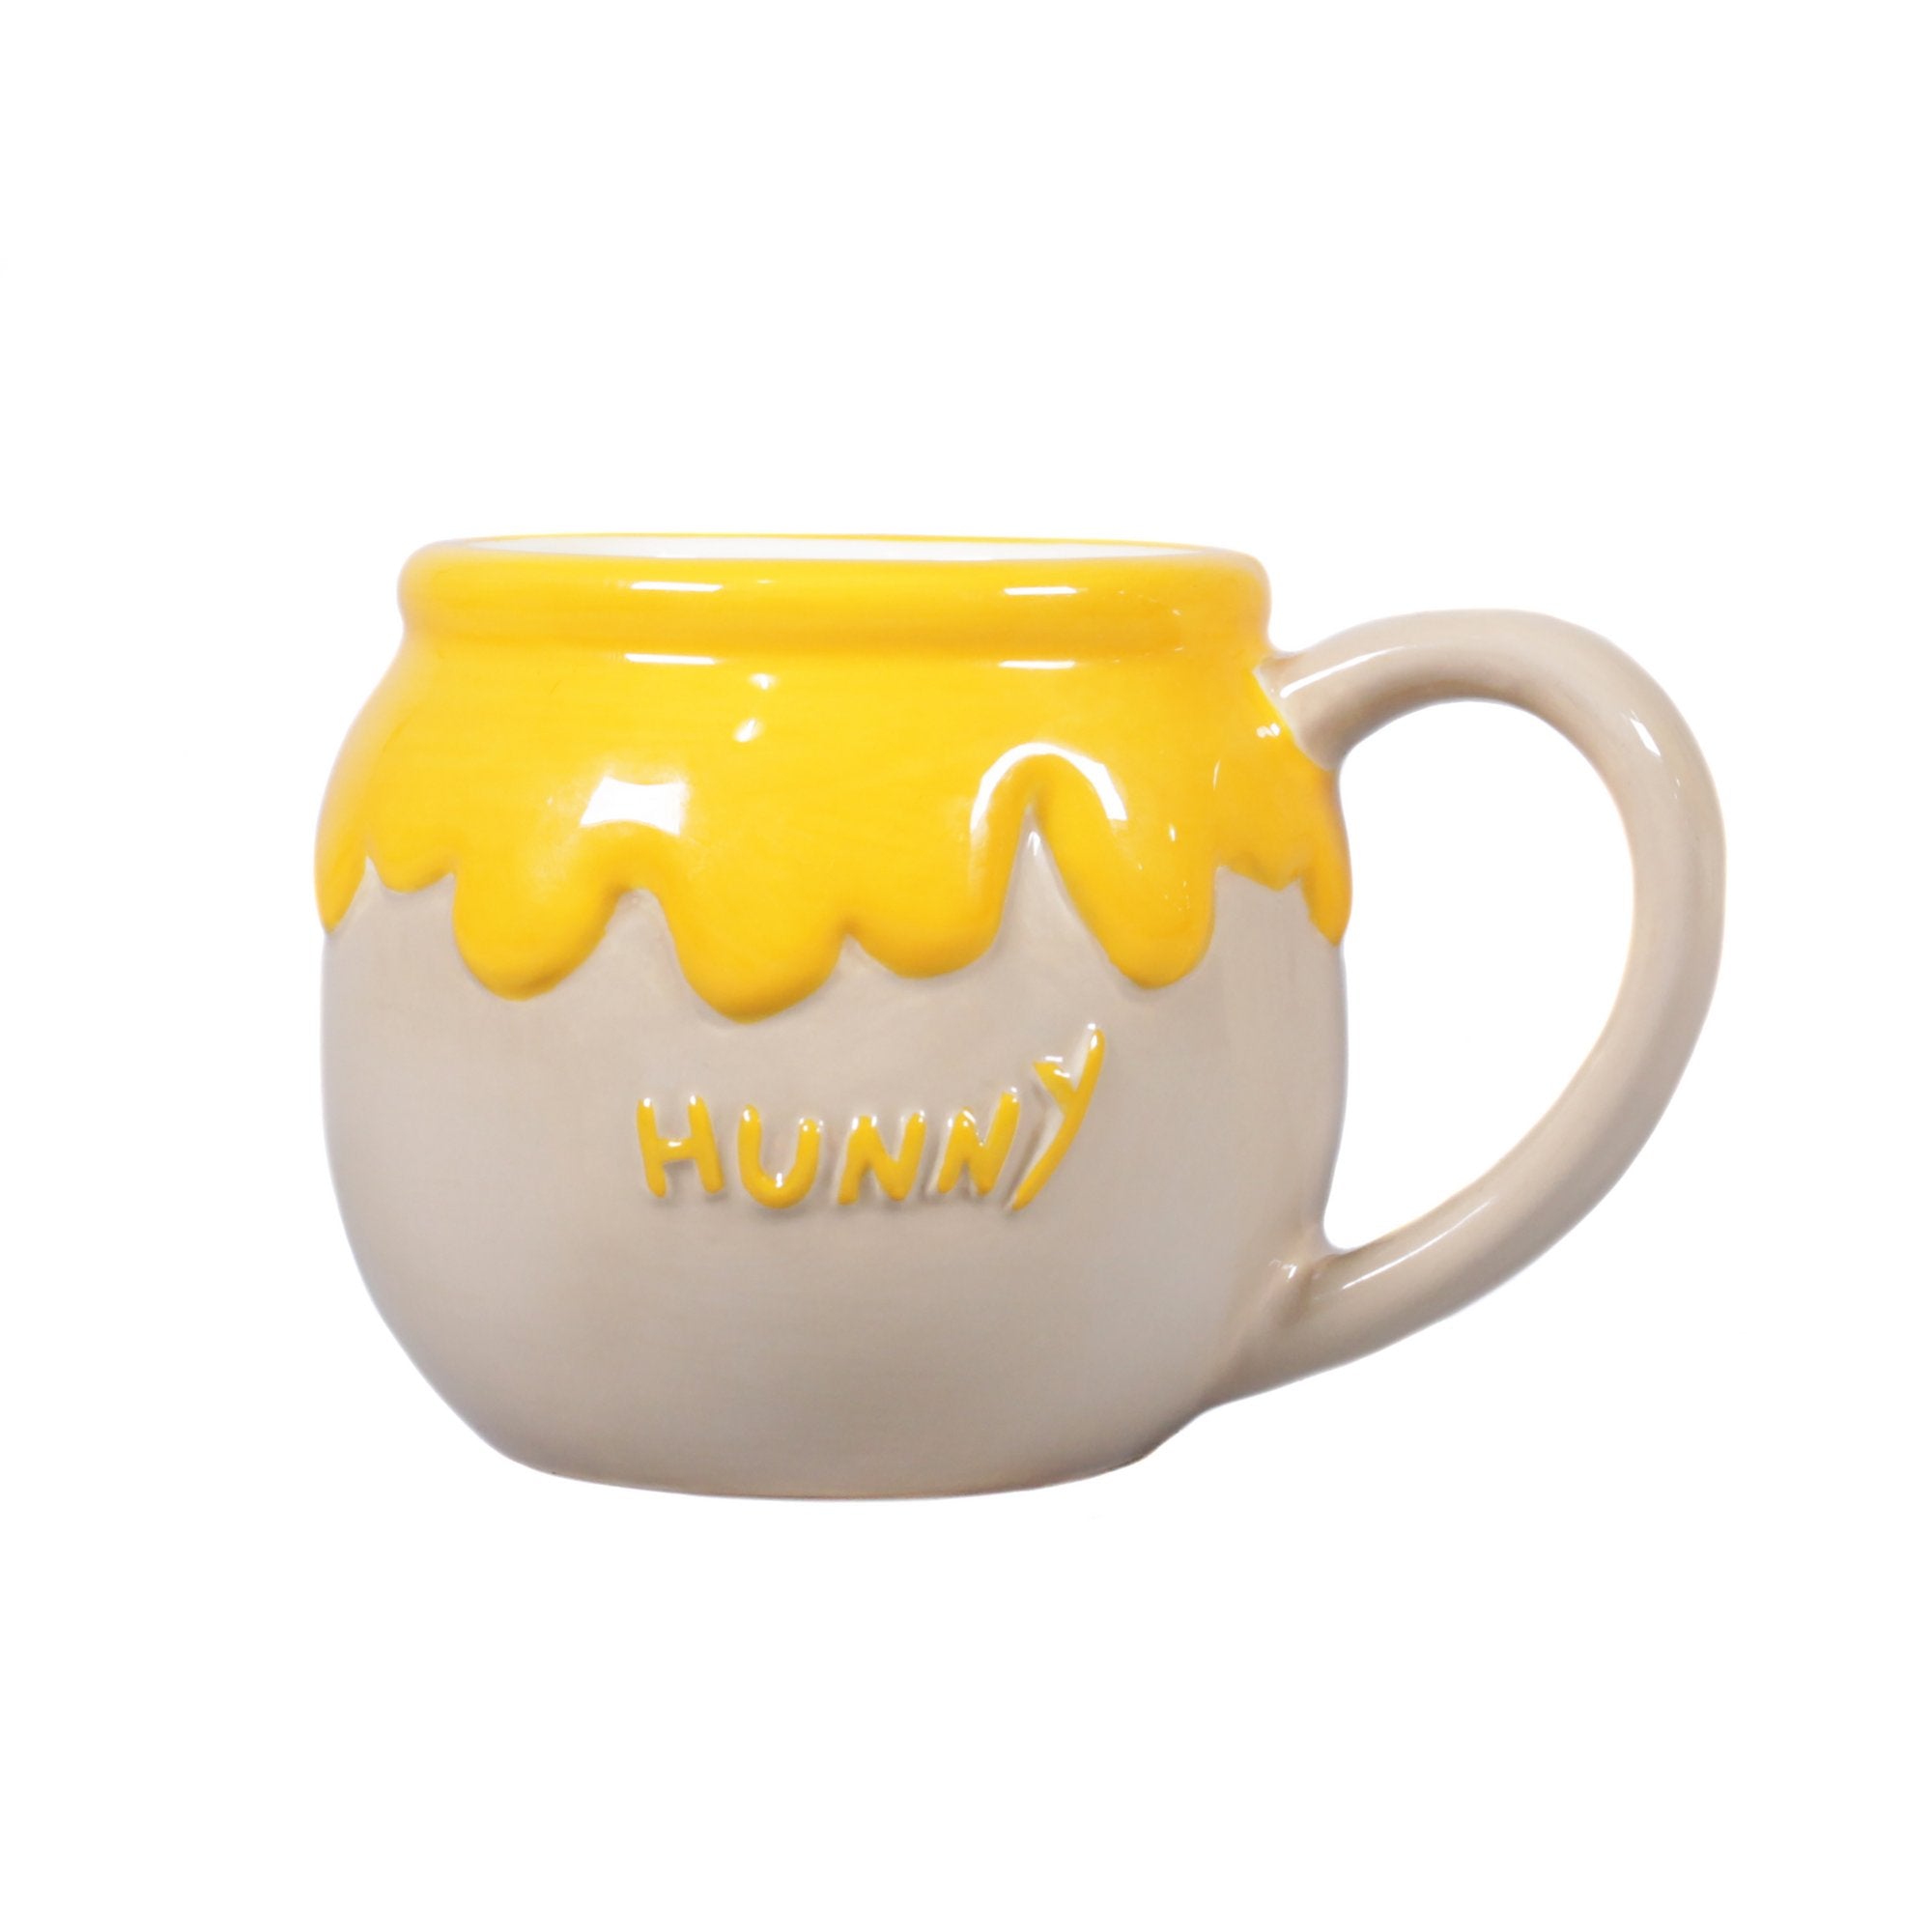 Winnie the Pooh Shaped Mug - Hunny